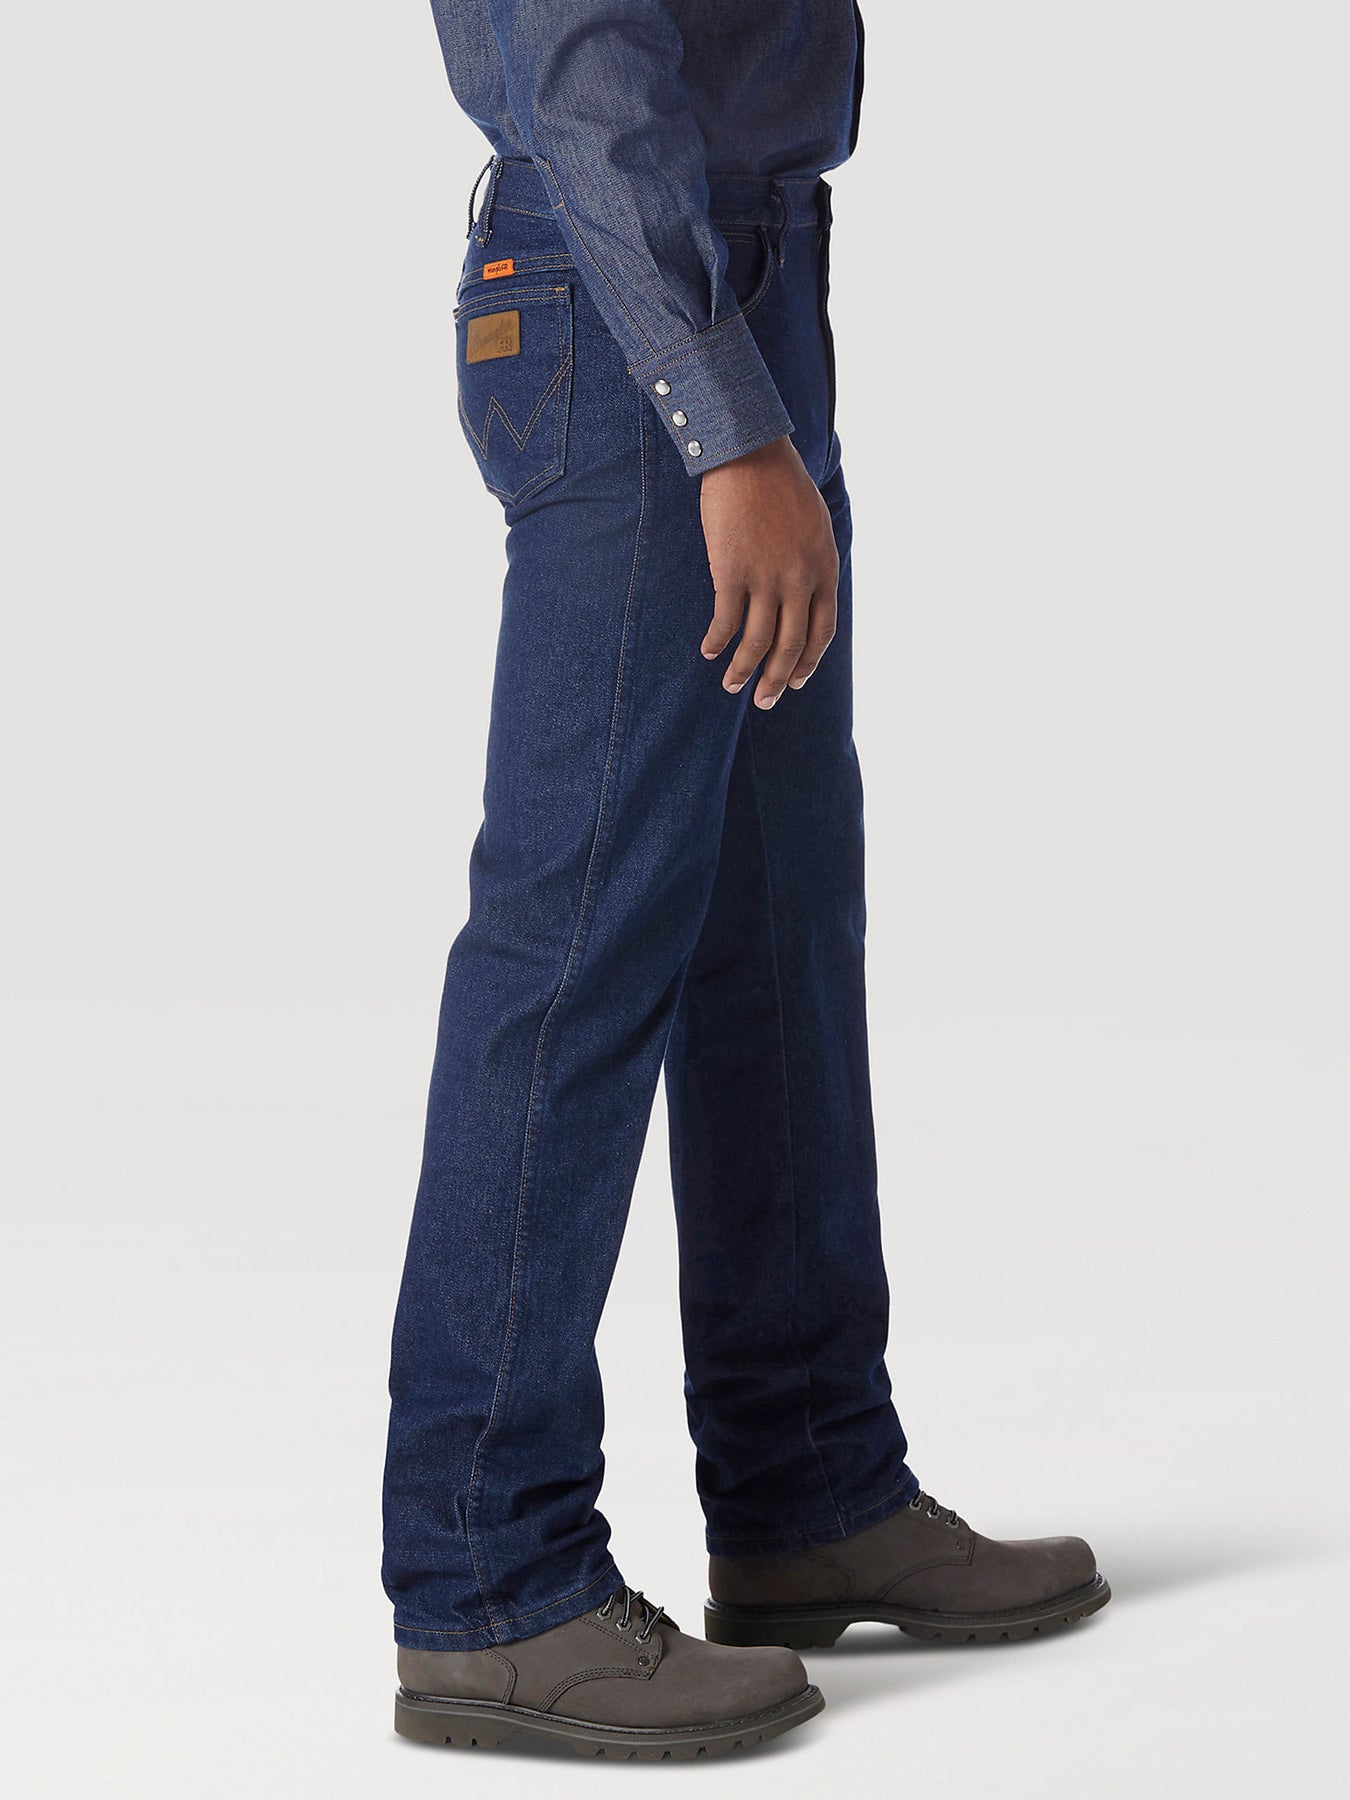 Wrangler FR Flame Resistant Original Fit Jean in Prewash – Boot Country